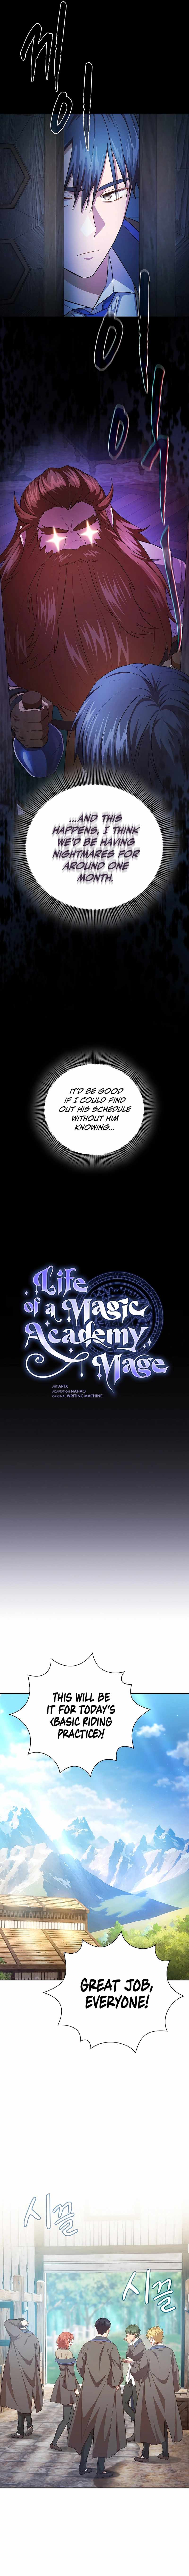 read Life of a Magic Academy Mage Chapter 90 Manga Online Free at Mangabuddy, MangaNato,Manhwatop | MangaSo.com